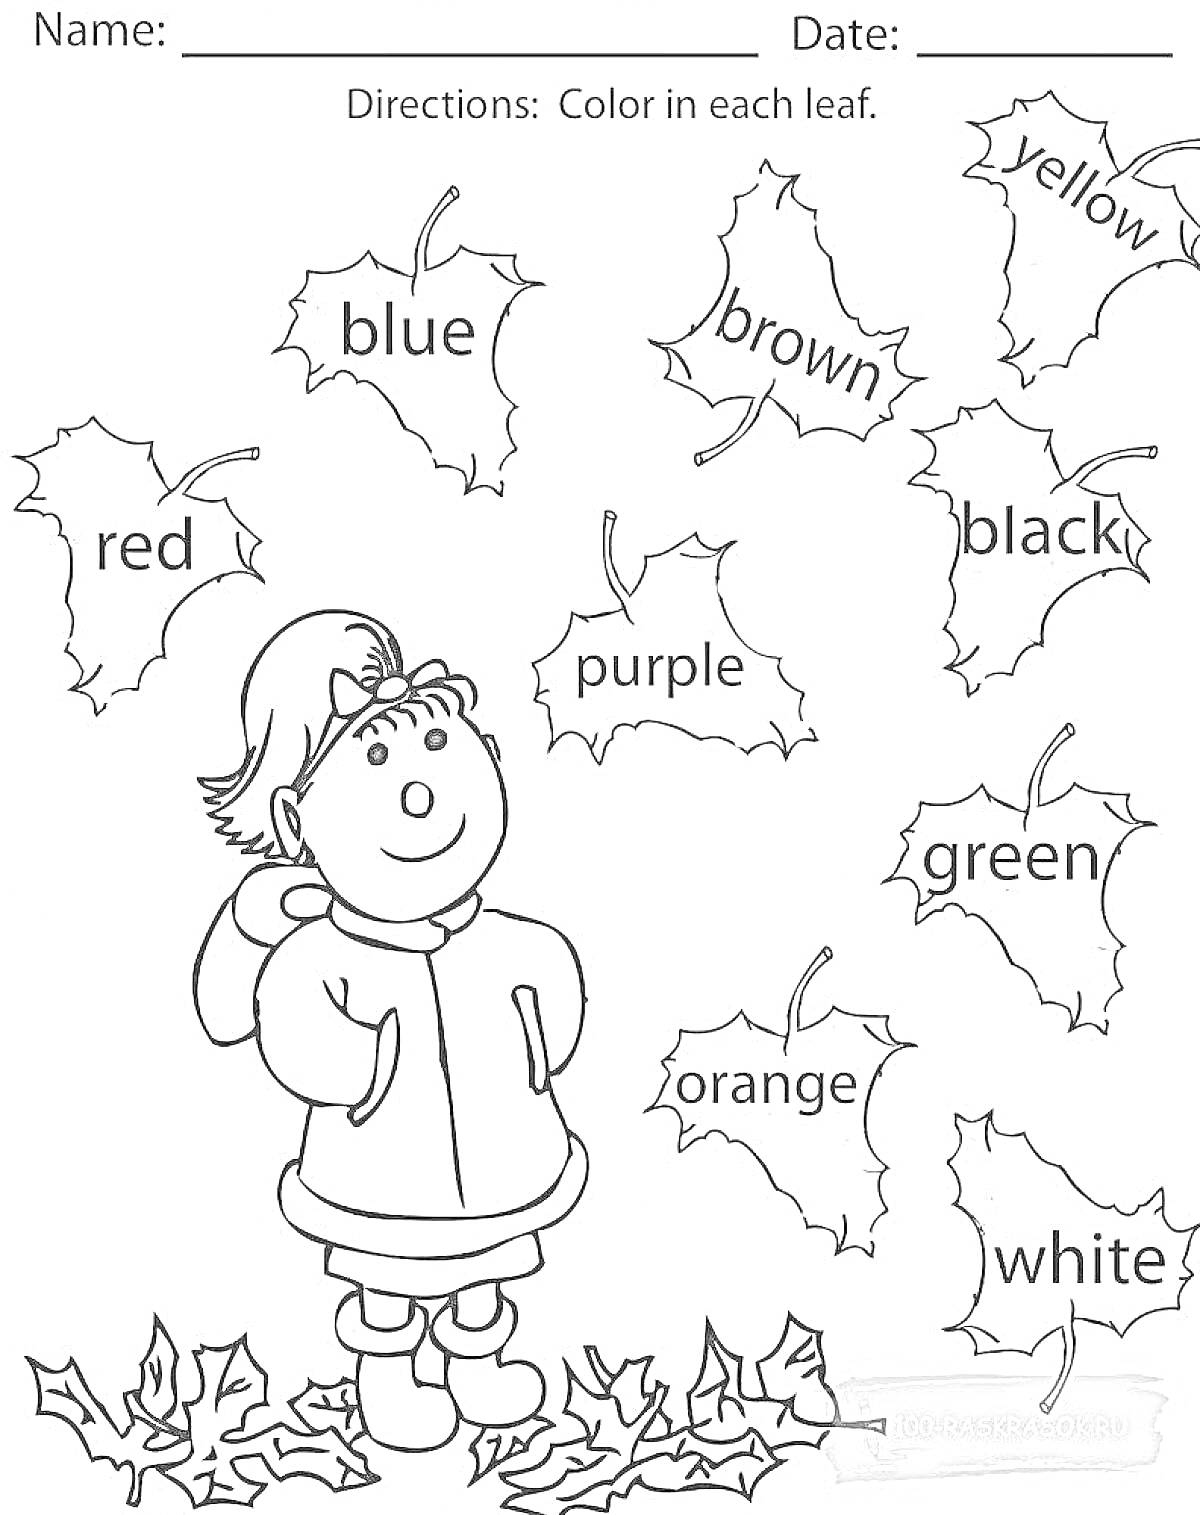 Раскраска Девочка среди листьев с названиями цветов на английском языке